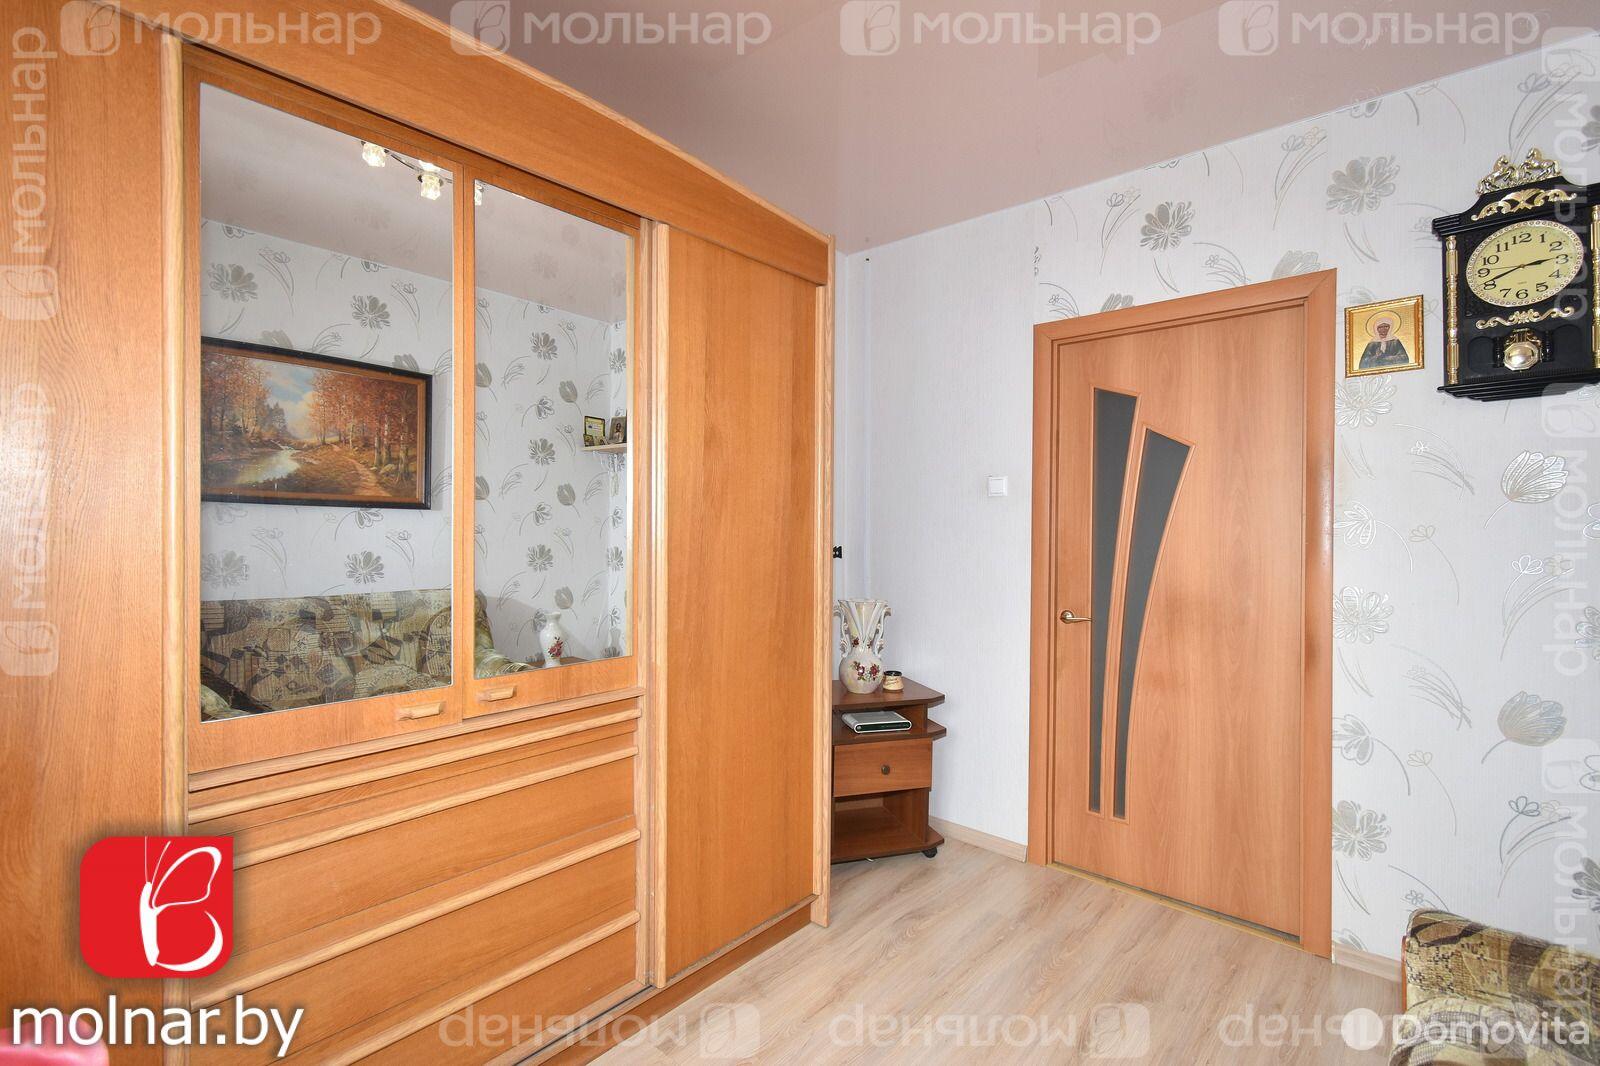 коттедж, Цнянка, ул. Дзержинского, стоимость продажи 474 933 р.